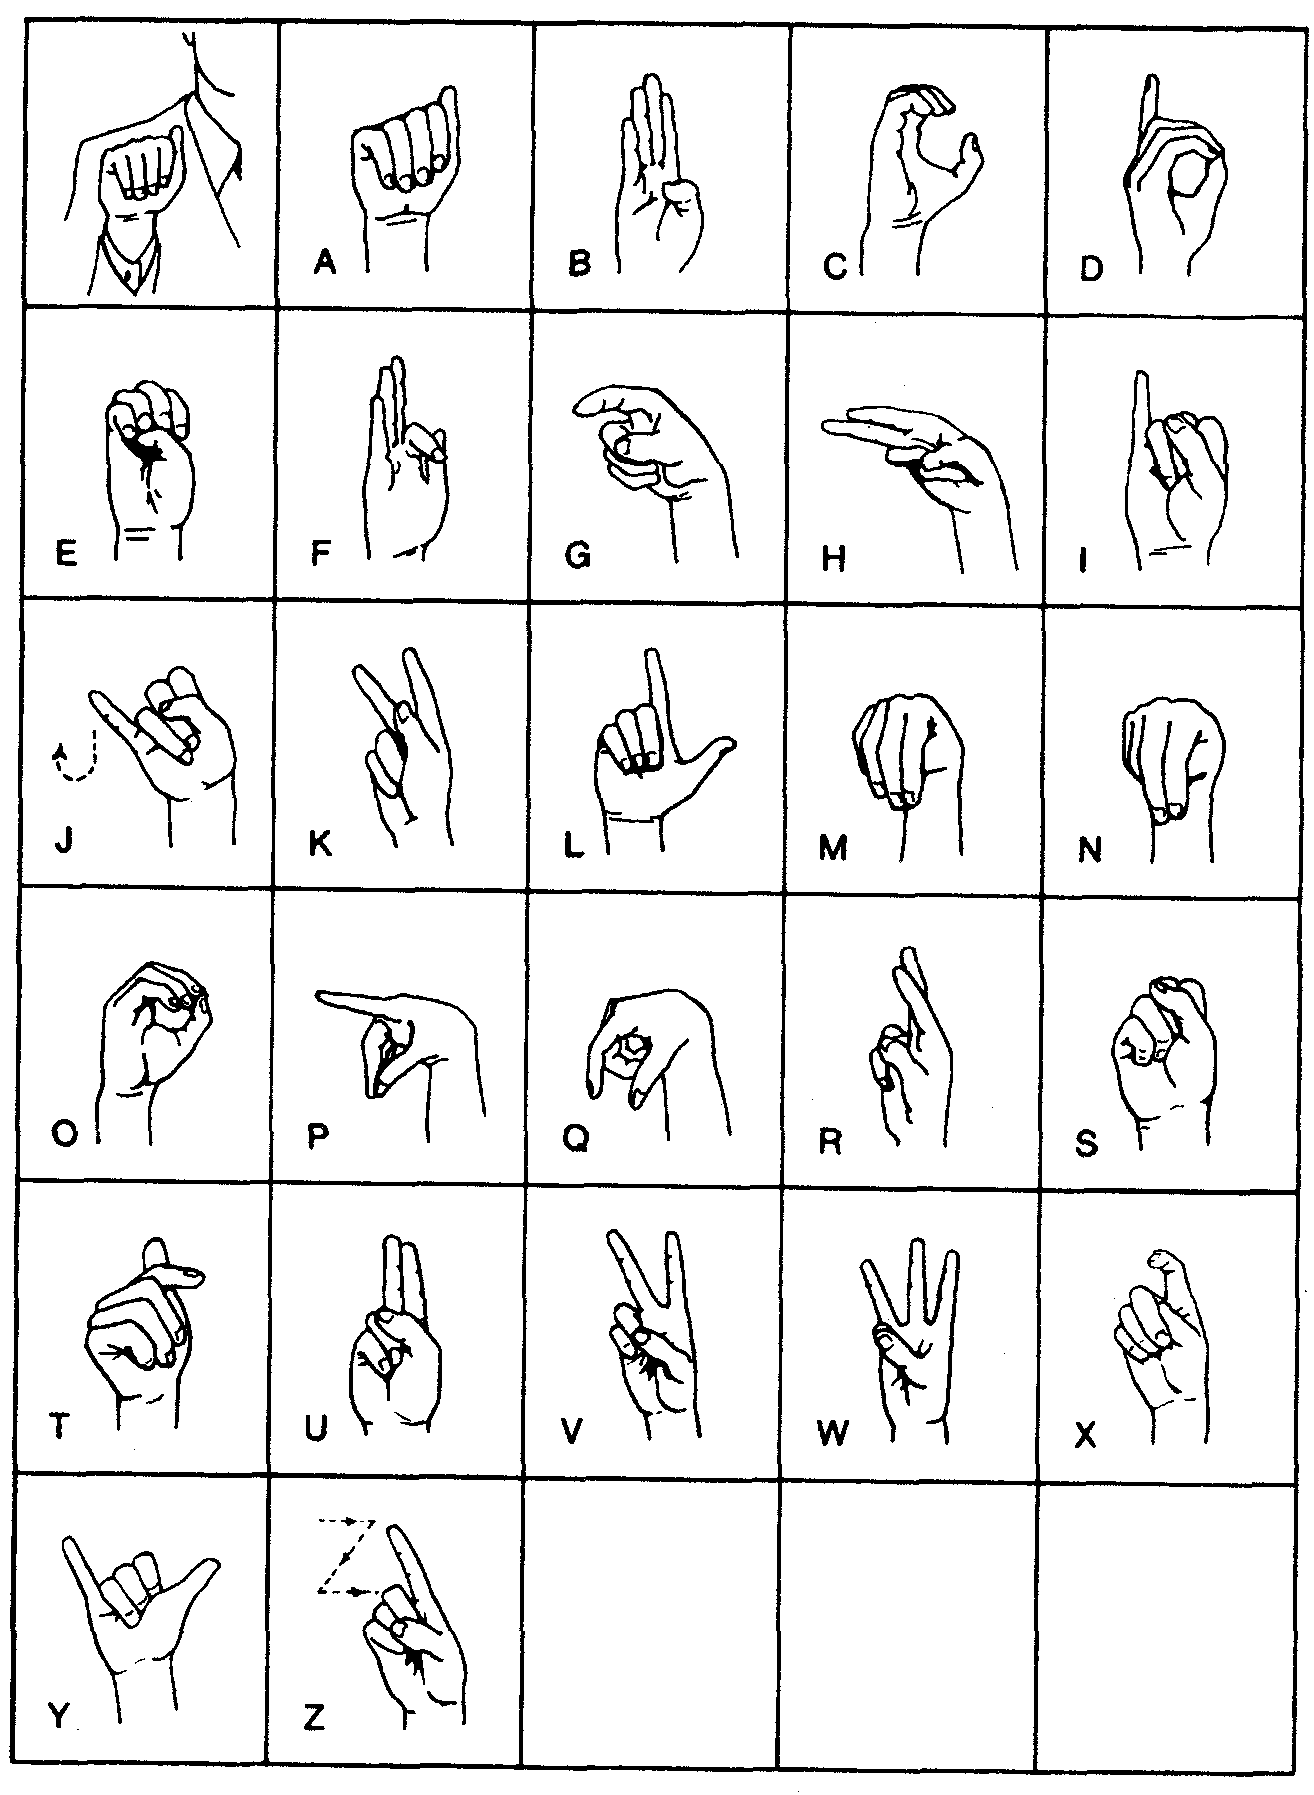 Разговор глухонемых. Язык жестов глухонемых алфавит. Международный дактильный алфавит. Дактиль язык жестов алфавит. Язык руками для глухонемых.